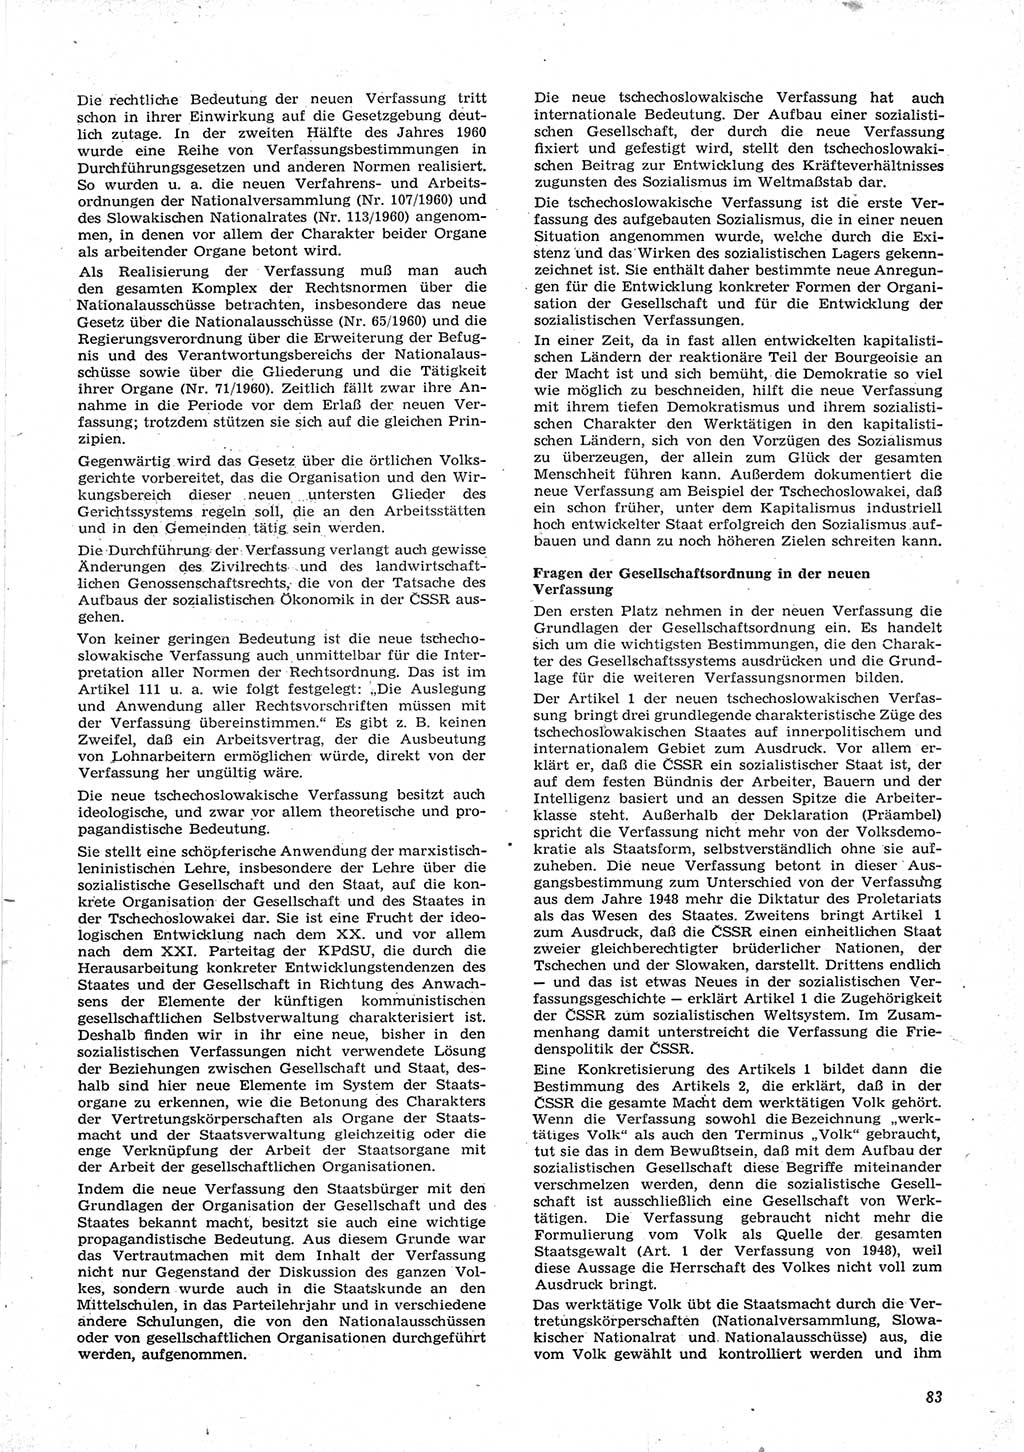 Neue Justiz (NJ), Zeitschrift für Recht und Rechtswissenschaft [Deutsche Demokratische Republik (DDR)], 15. Jahrgang 1961, Seite 83 (NJ DDR 1961, S. 83)